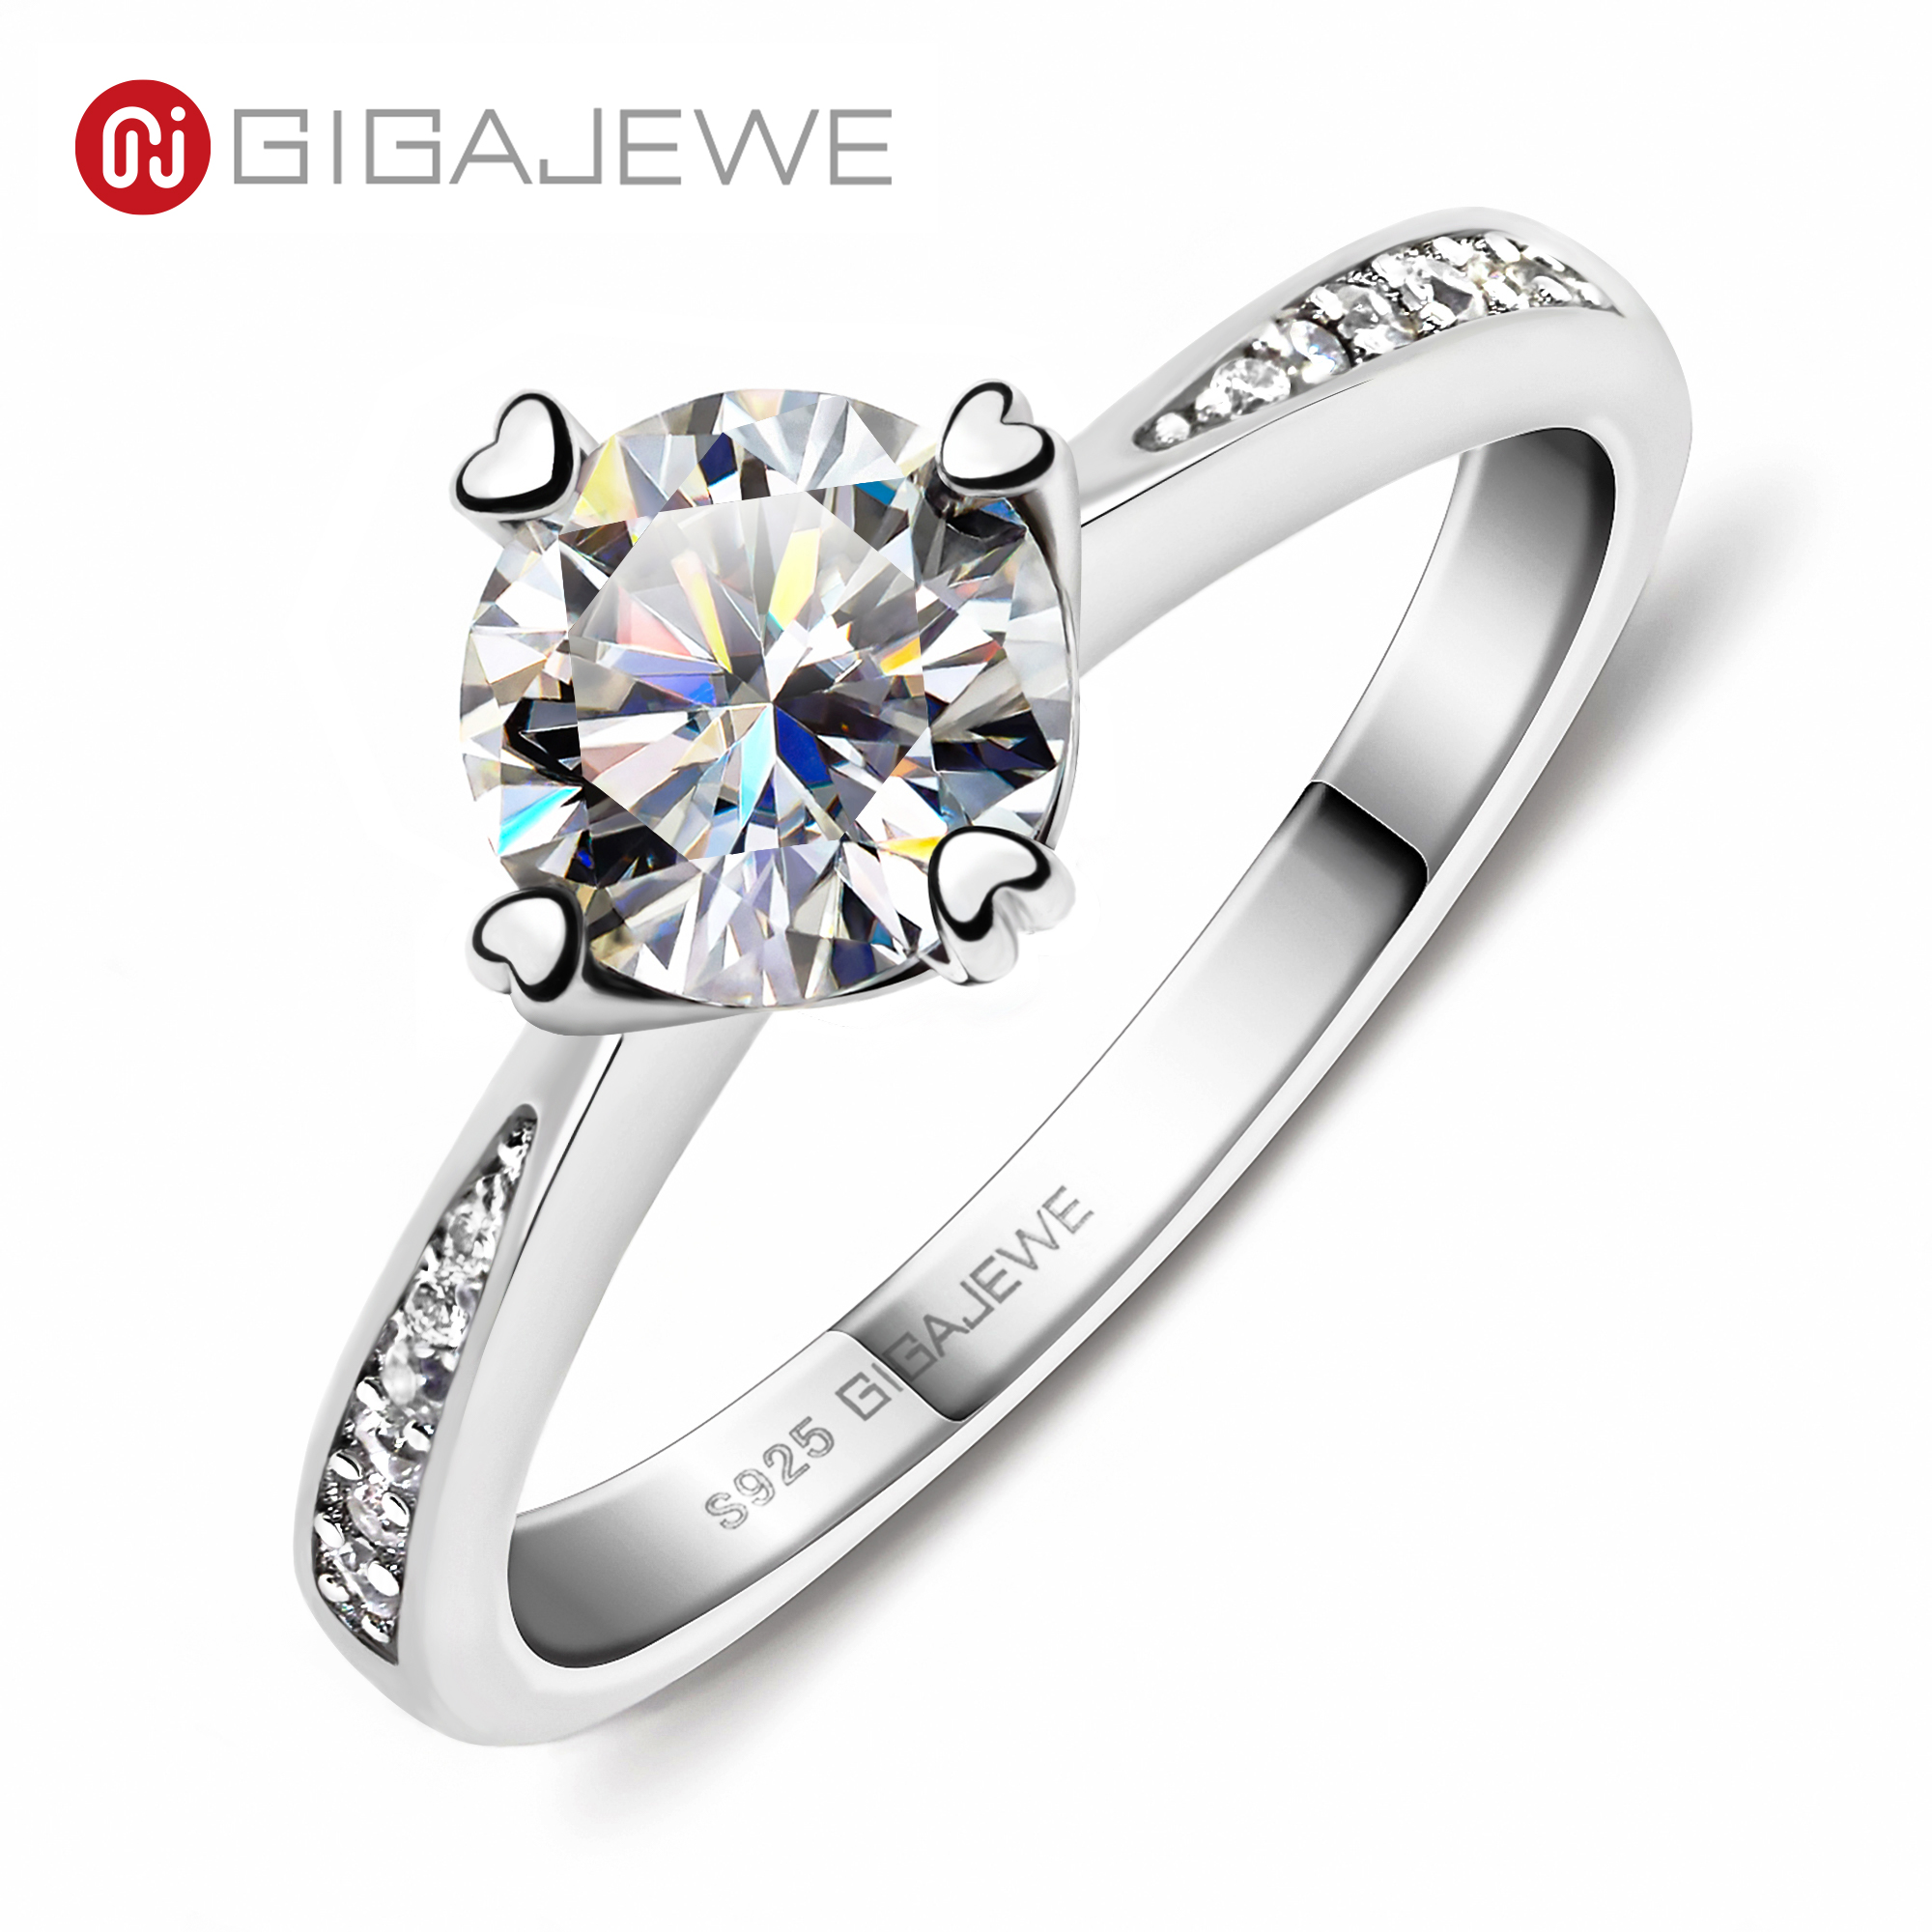 GIGAJEWE 莫桑钻戒指共 1.0 克拉 VVS1 圆形切割 EF 颜色 925 银首饰钻石测试通过爱情信物女士女孩礼物